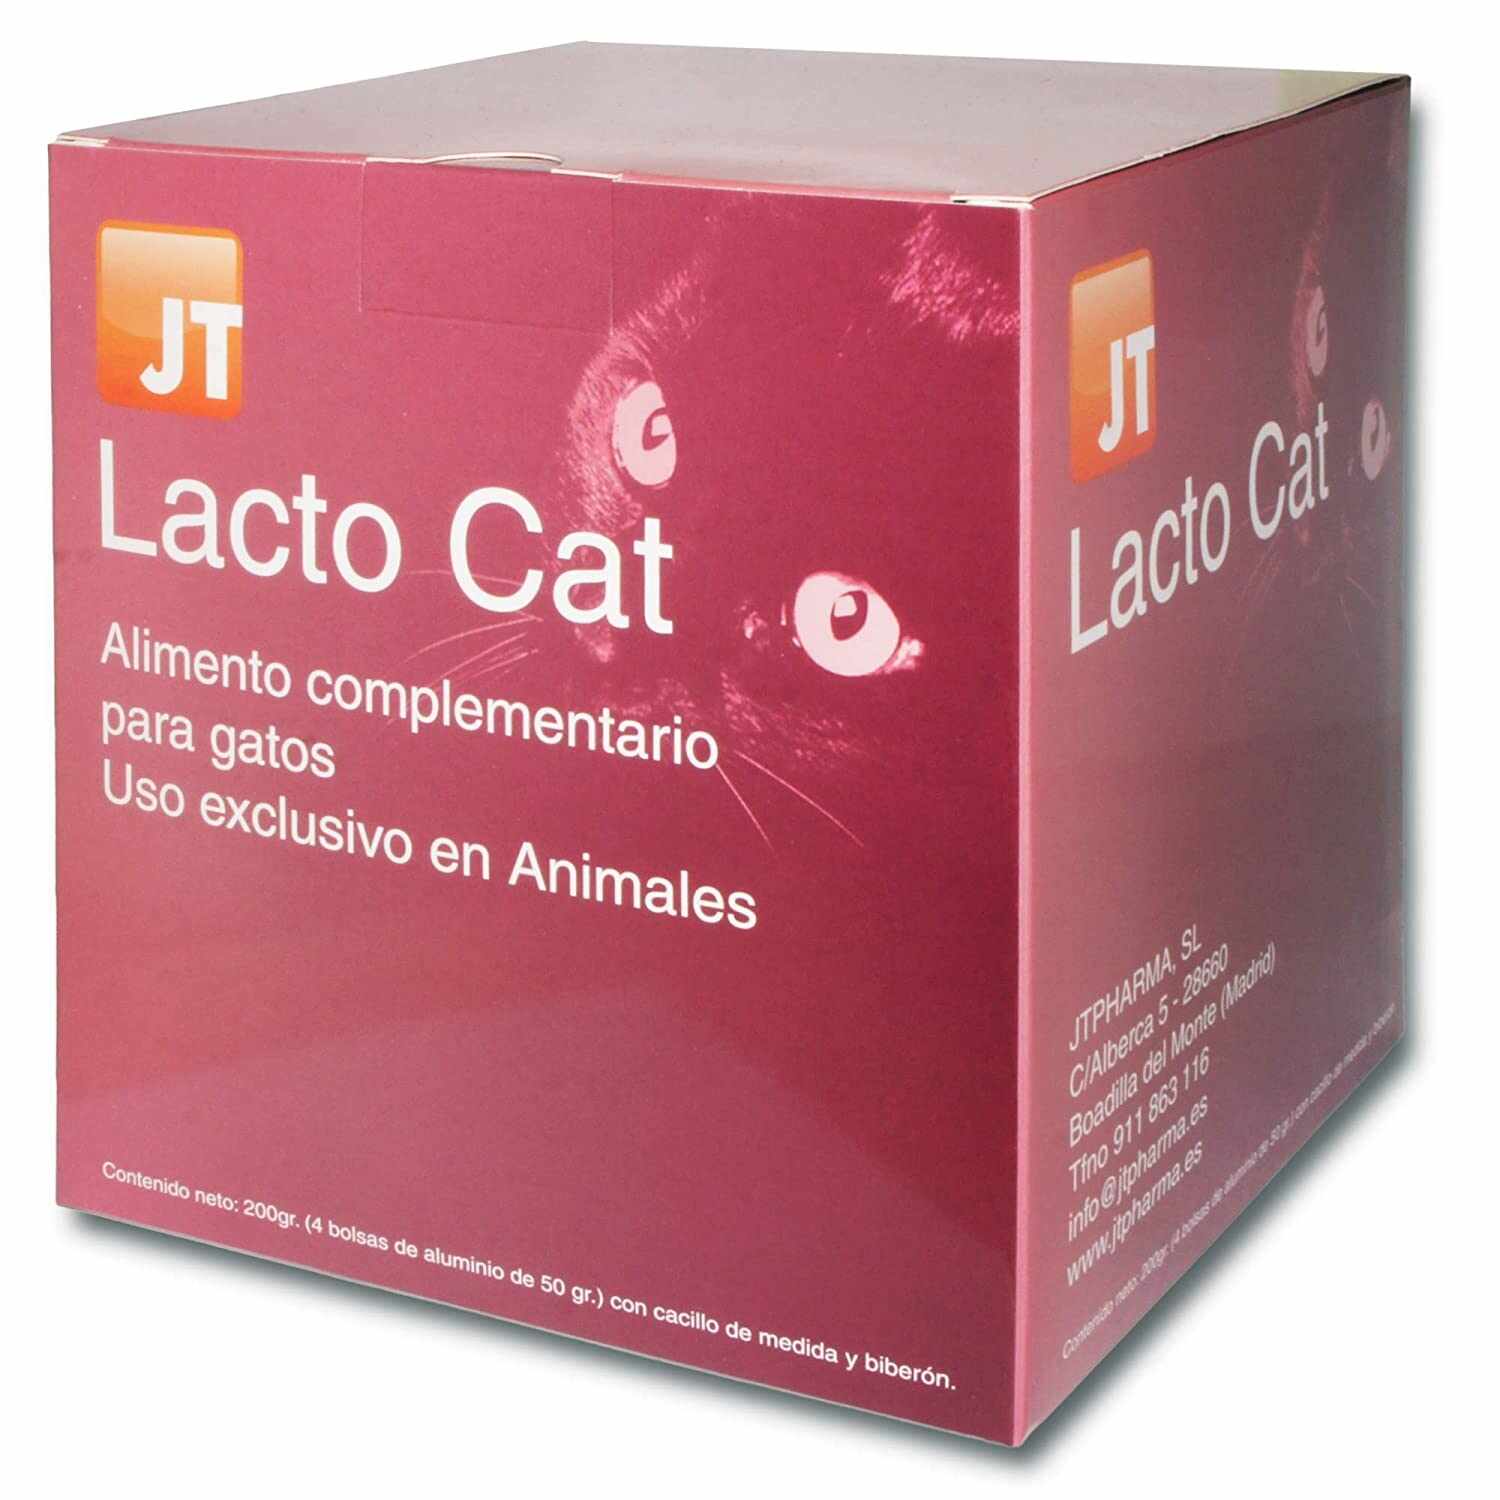 JT- LACTO CAT PISICI LAPTE PRAF PLICURI 4 X 50G + Biberon cu 2 tetine CADOU